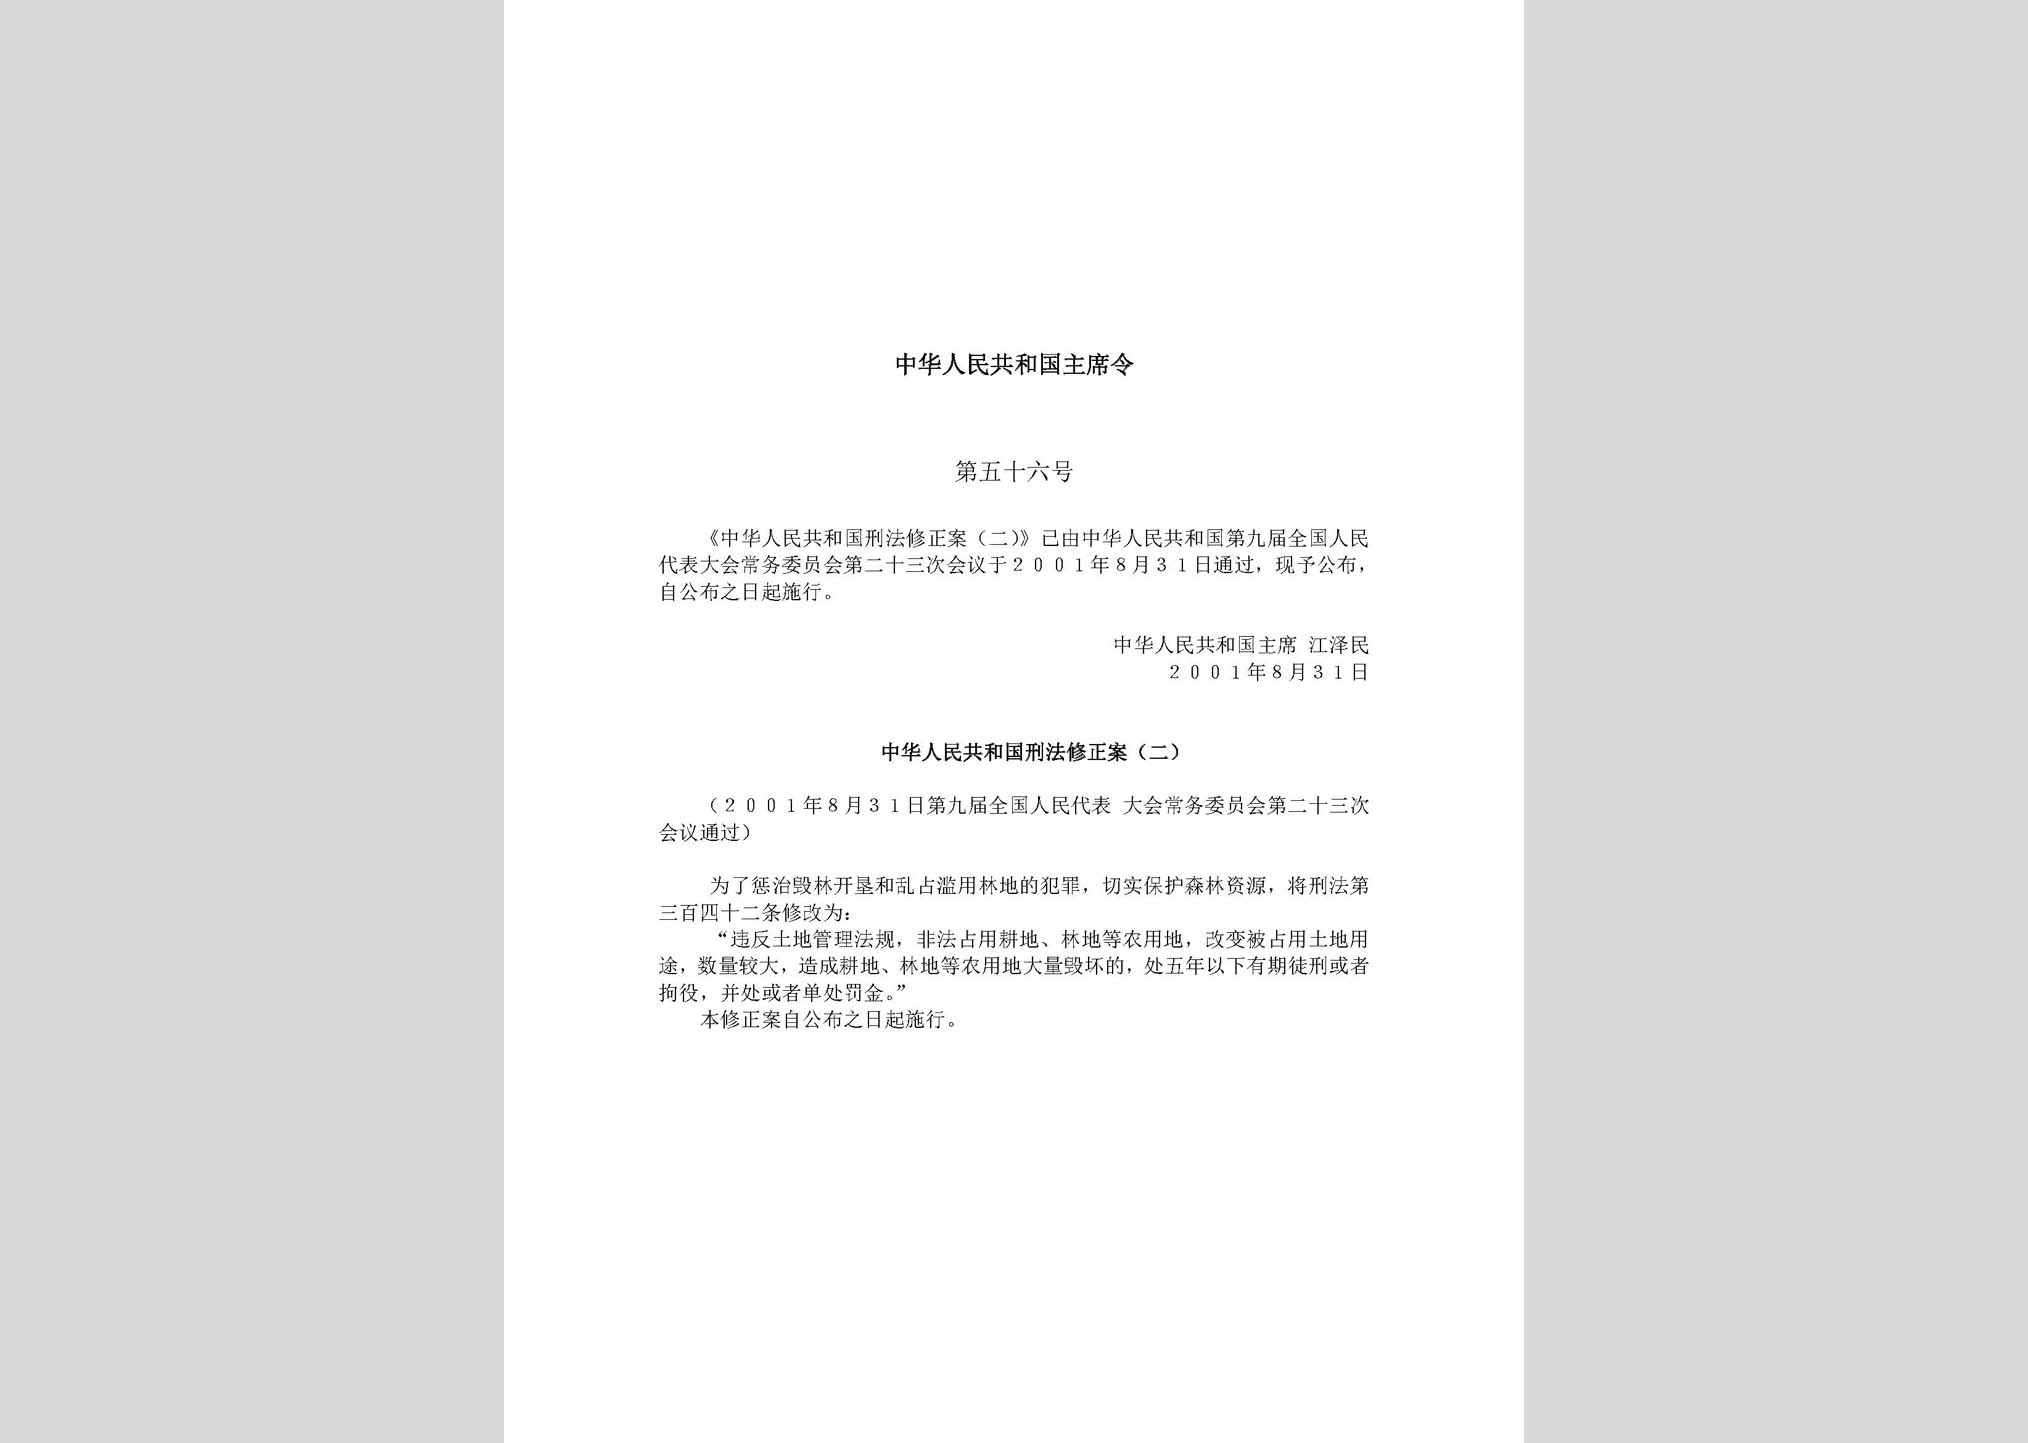 中华人民共和国主席令第五十六号：中华人民共和国刑法修正案(二)